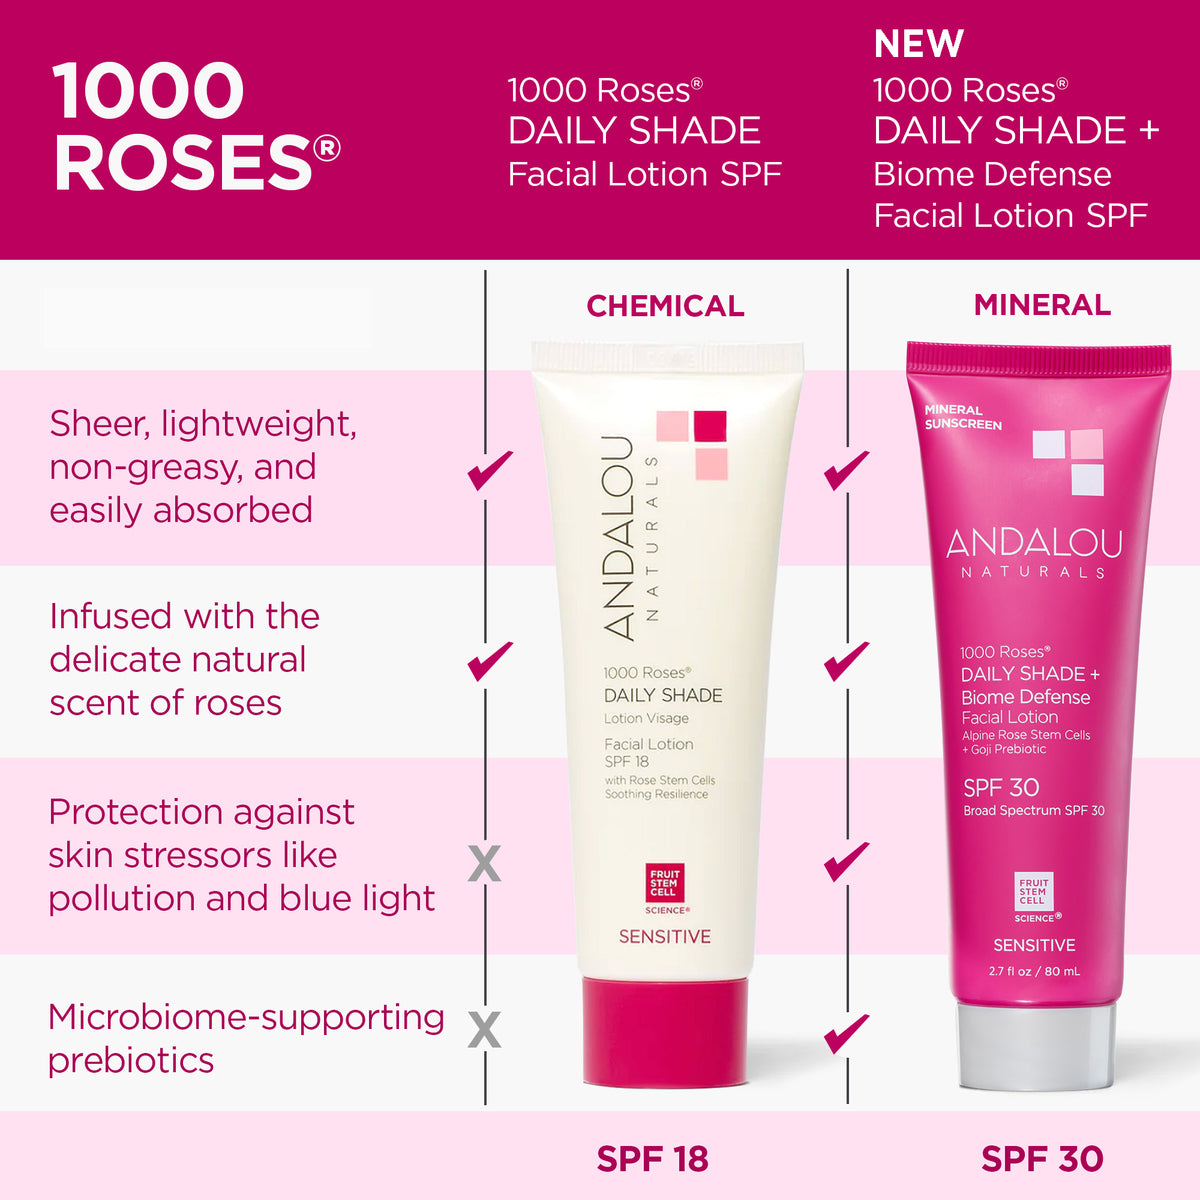 1000 Roses Sensitive Daily  Shade Biome Defense Mineral Sunscreen SPF 30 - Andalou Naturals US